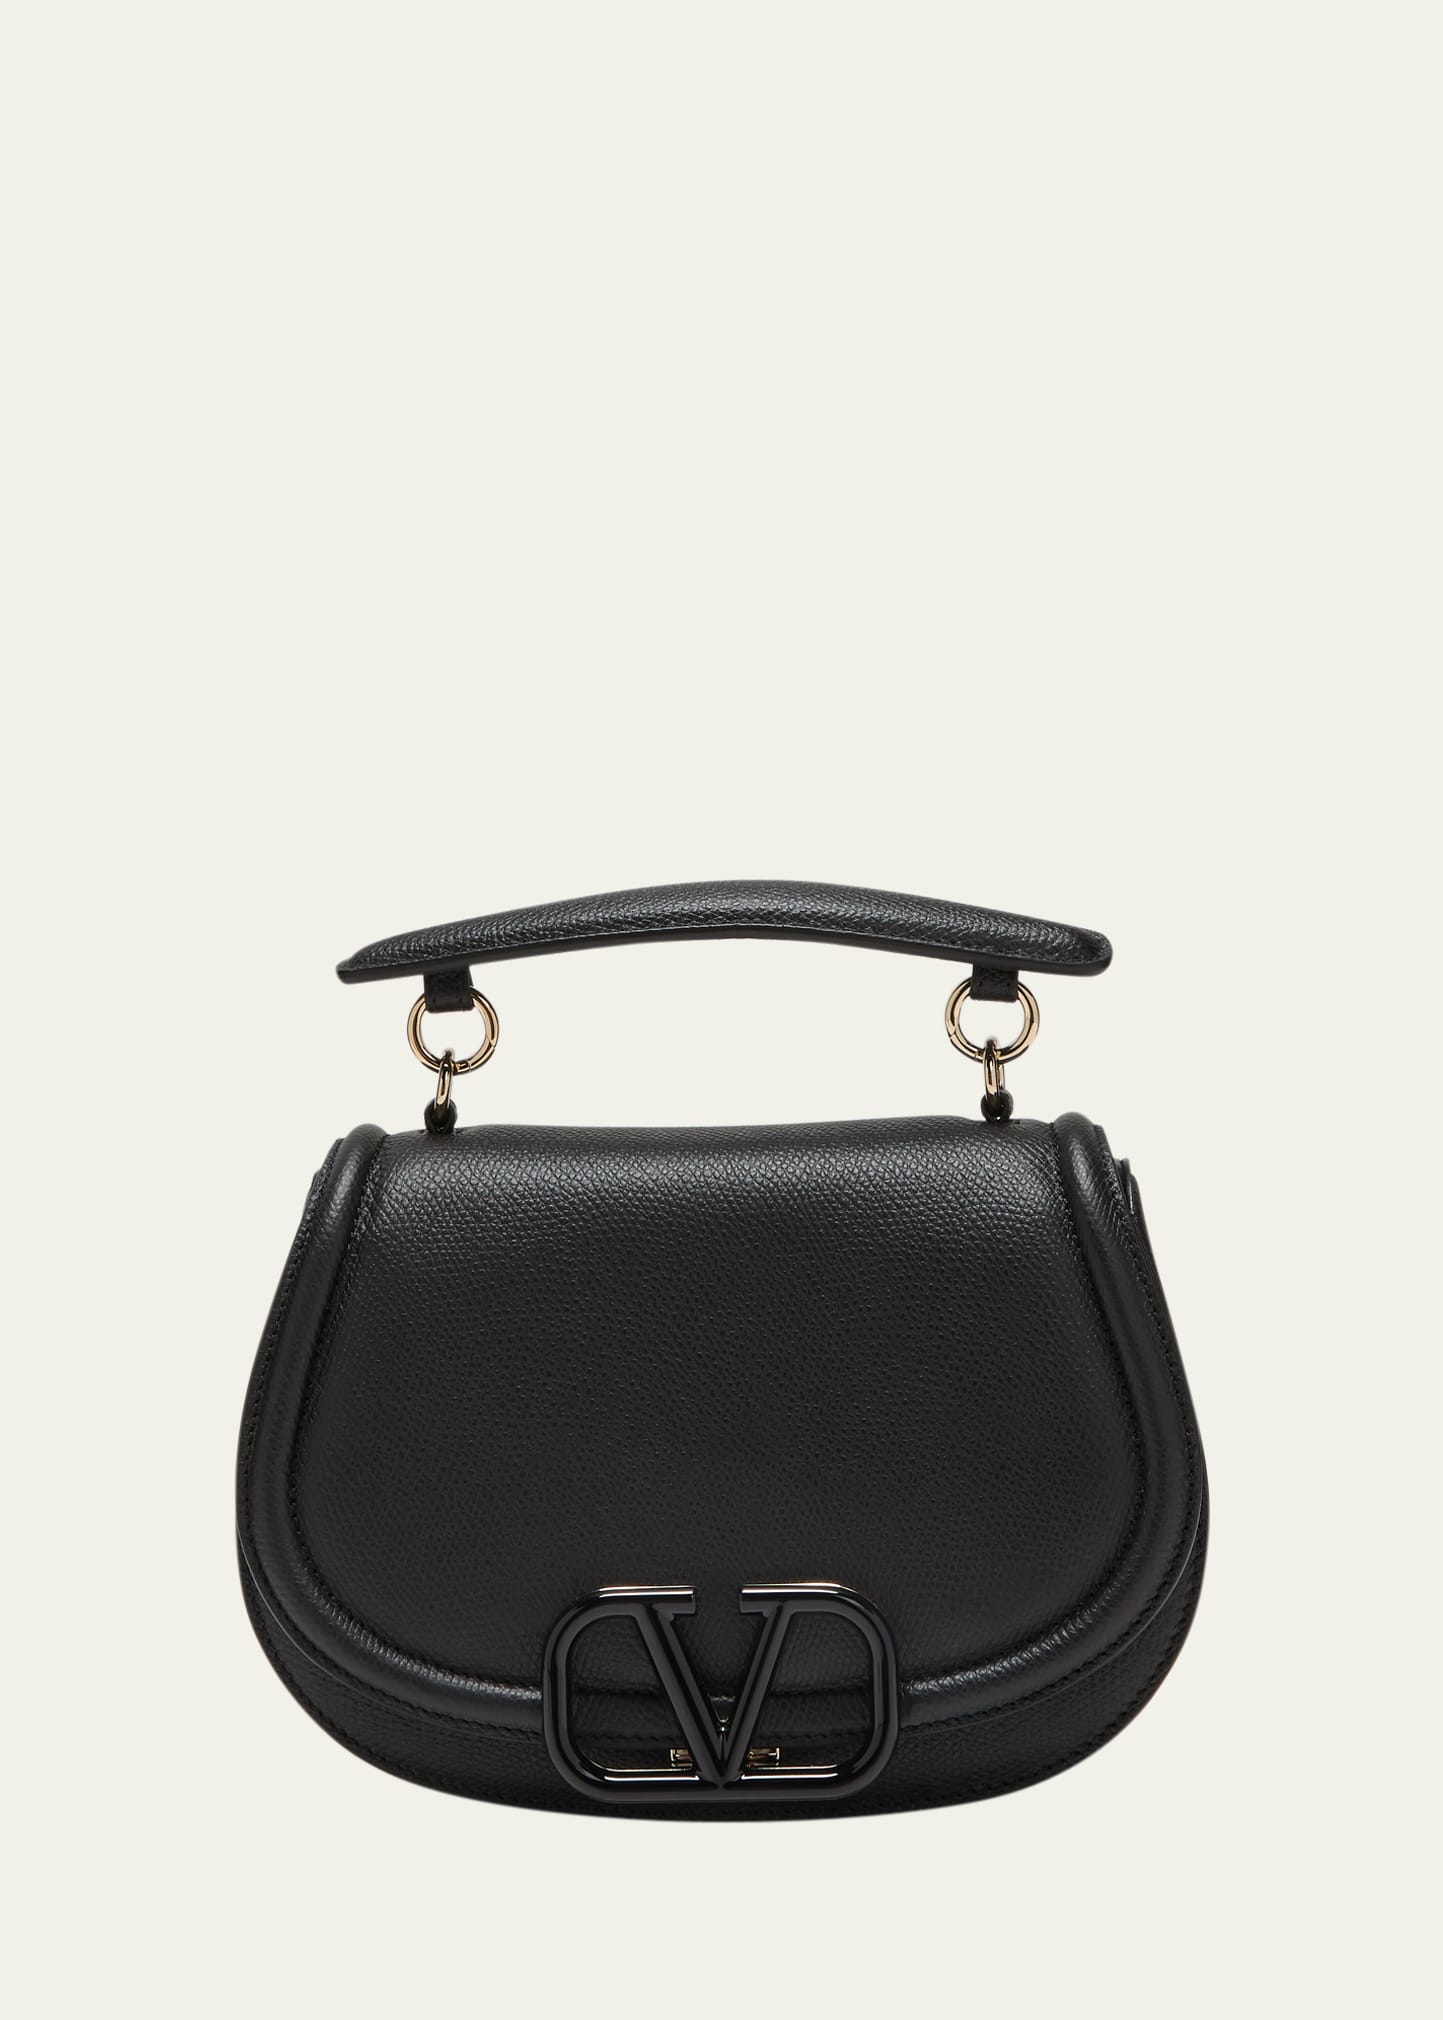 Valentino Garavani VSLING Small Leather Shoulder Bag